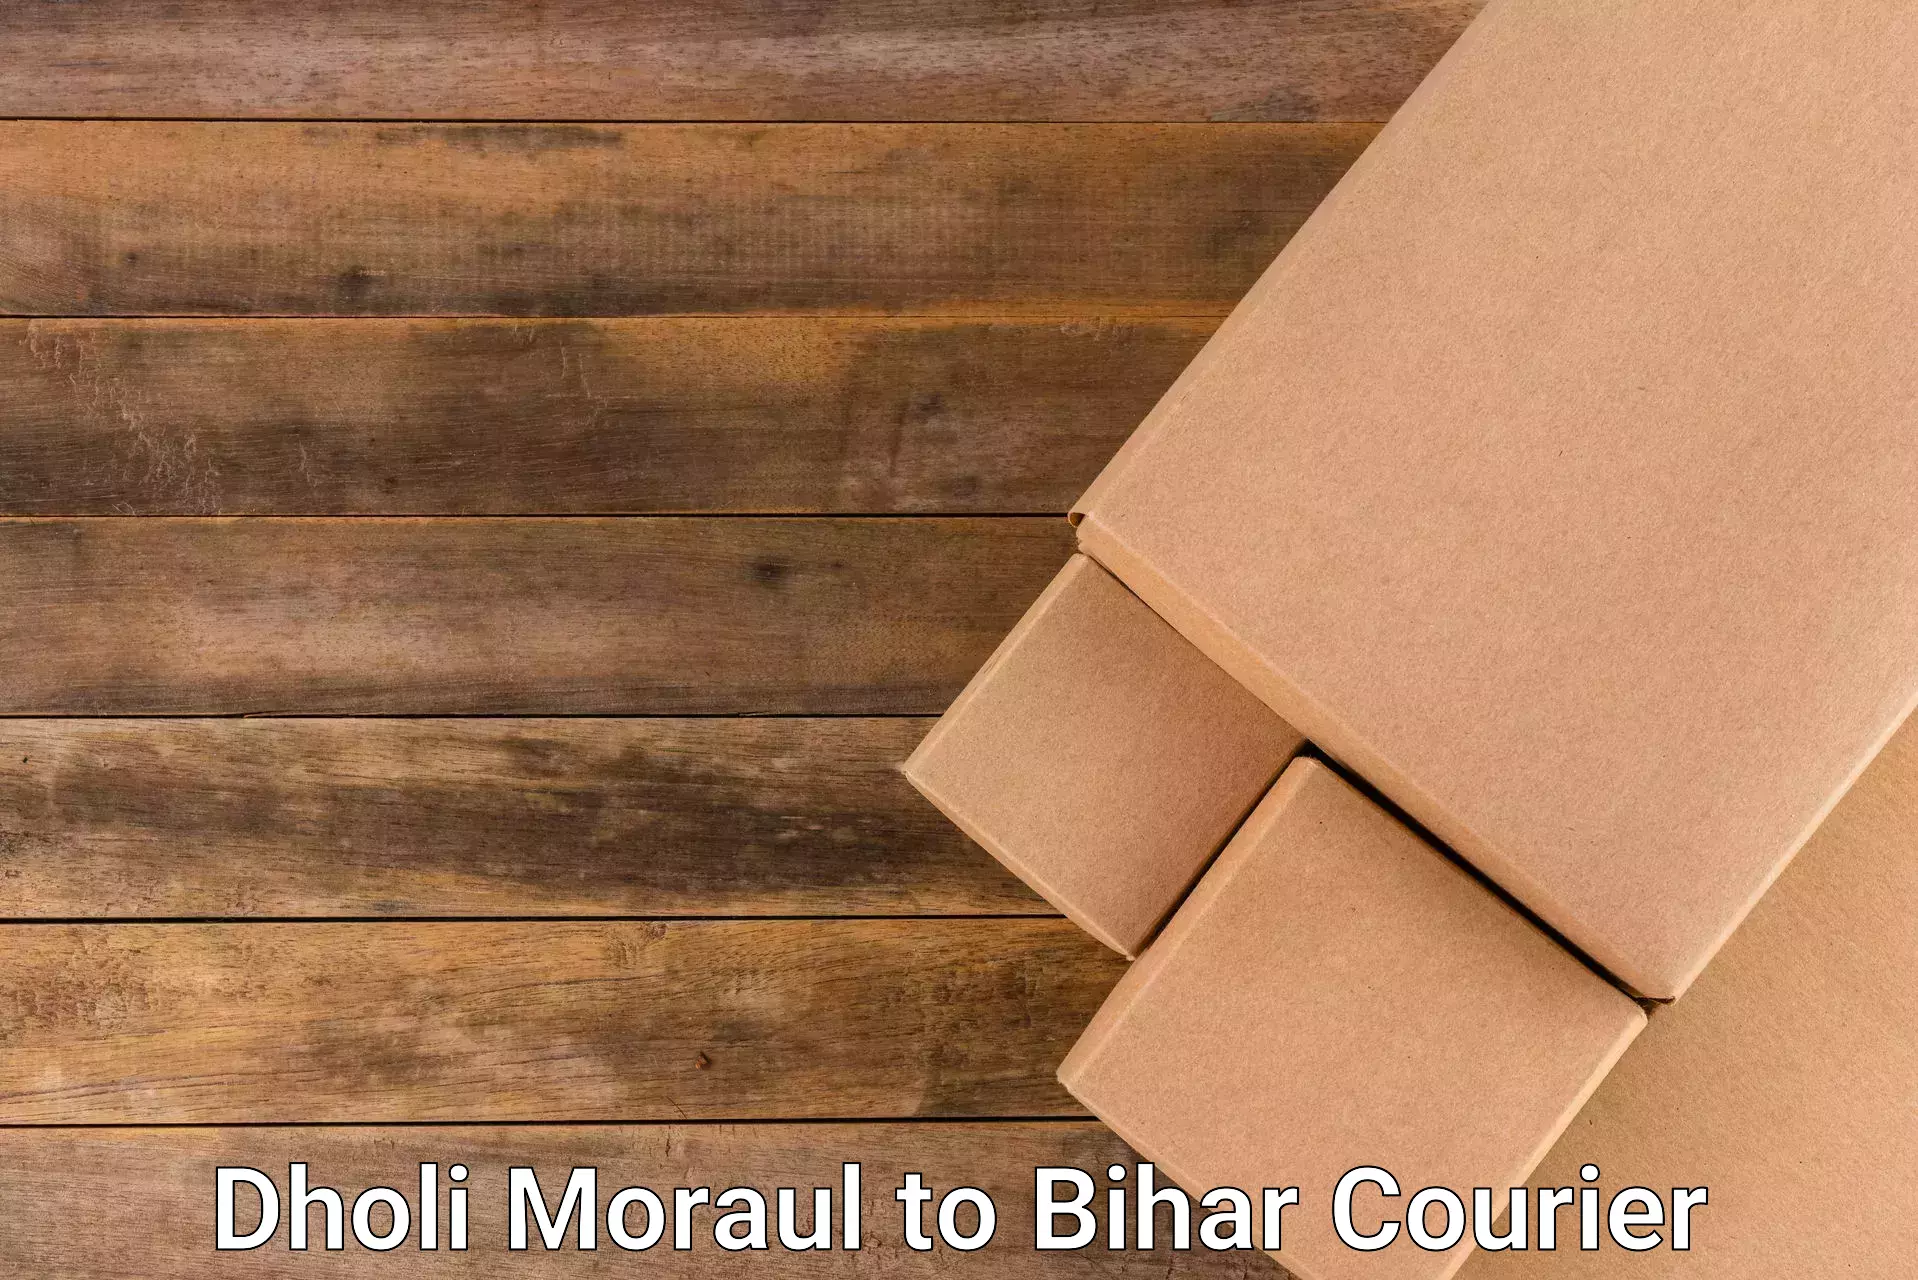 Efficient parcel transport Dholi Moraul to Bihar